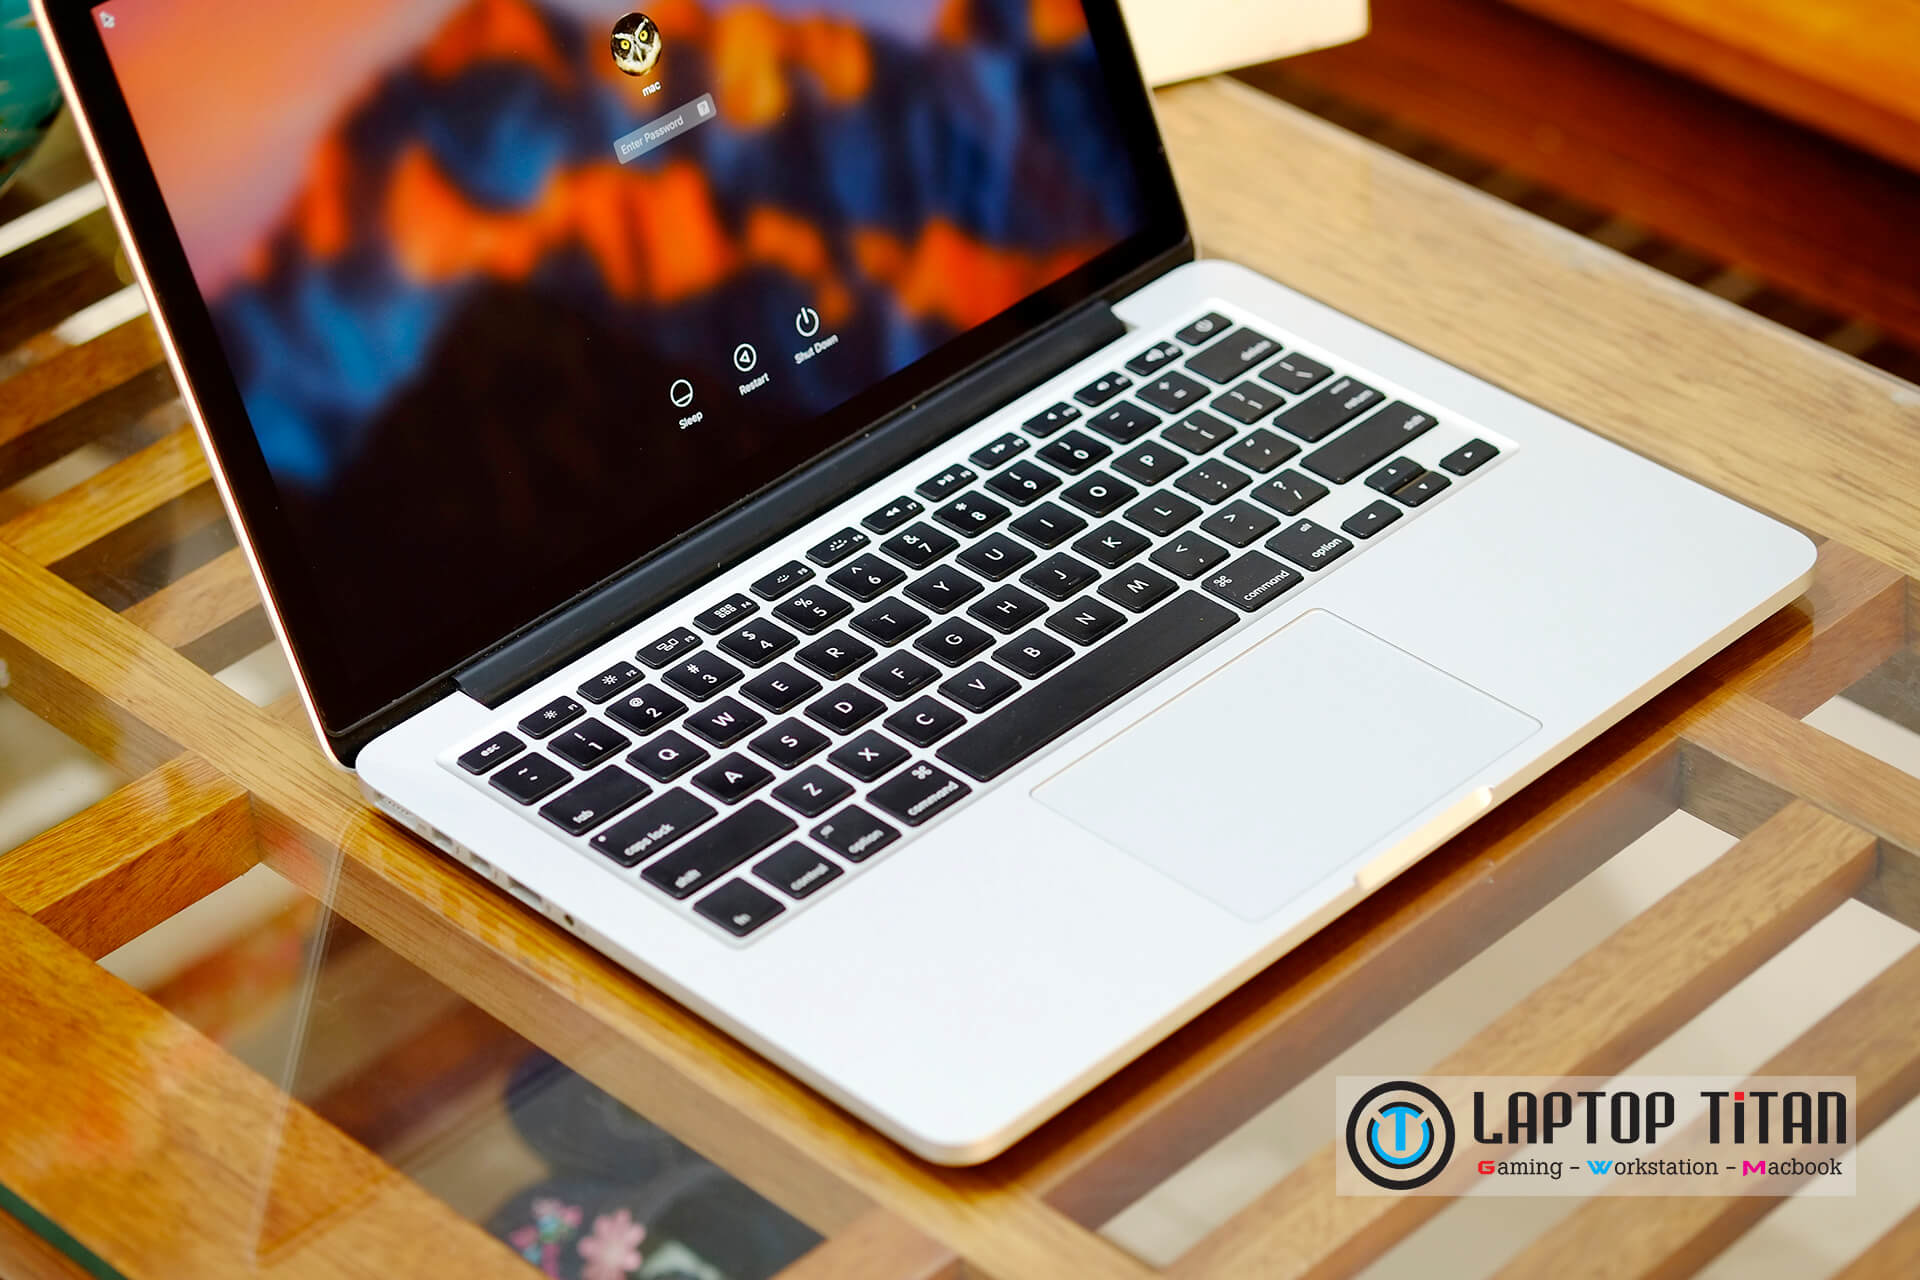 Macbook Pro 2014 Mgx82 I5 / 8Gb / 256Gb / 13.3-Inch Retina / New 99%